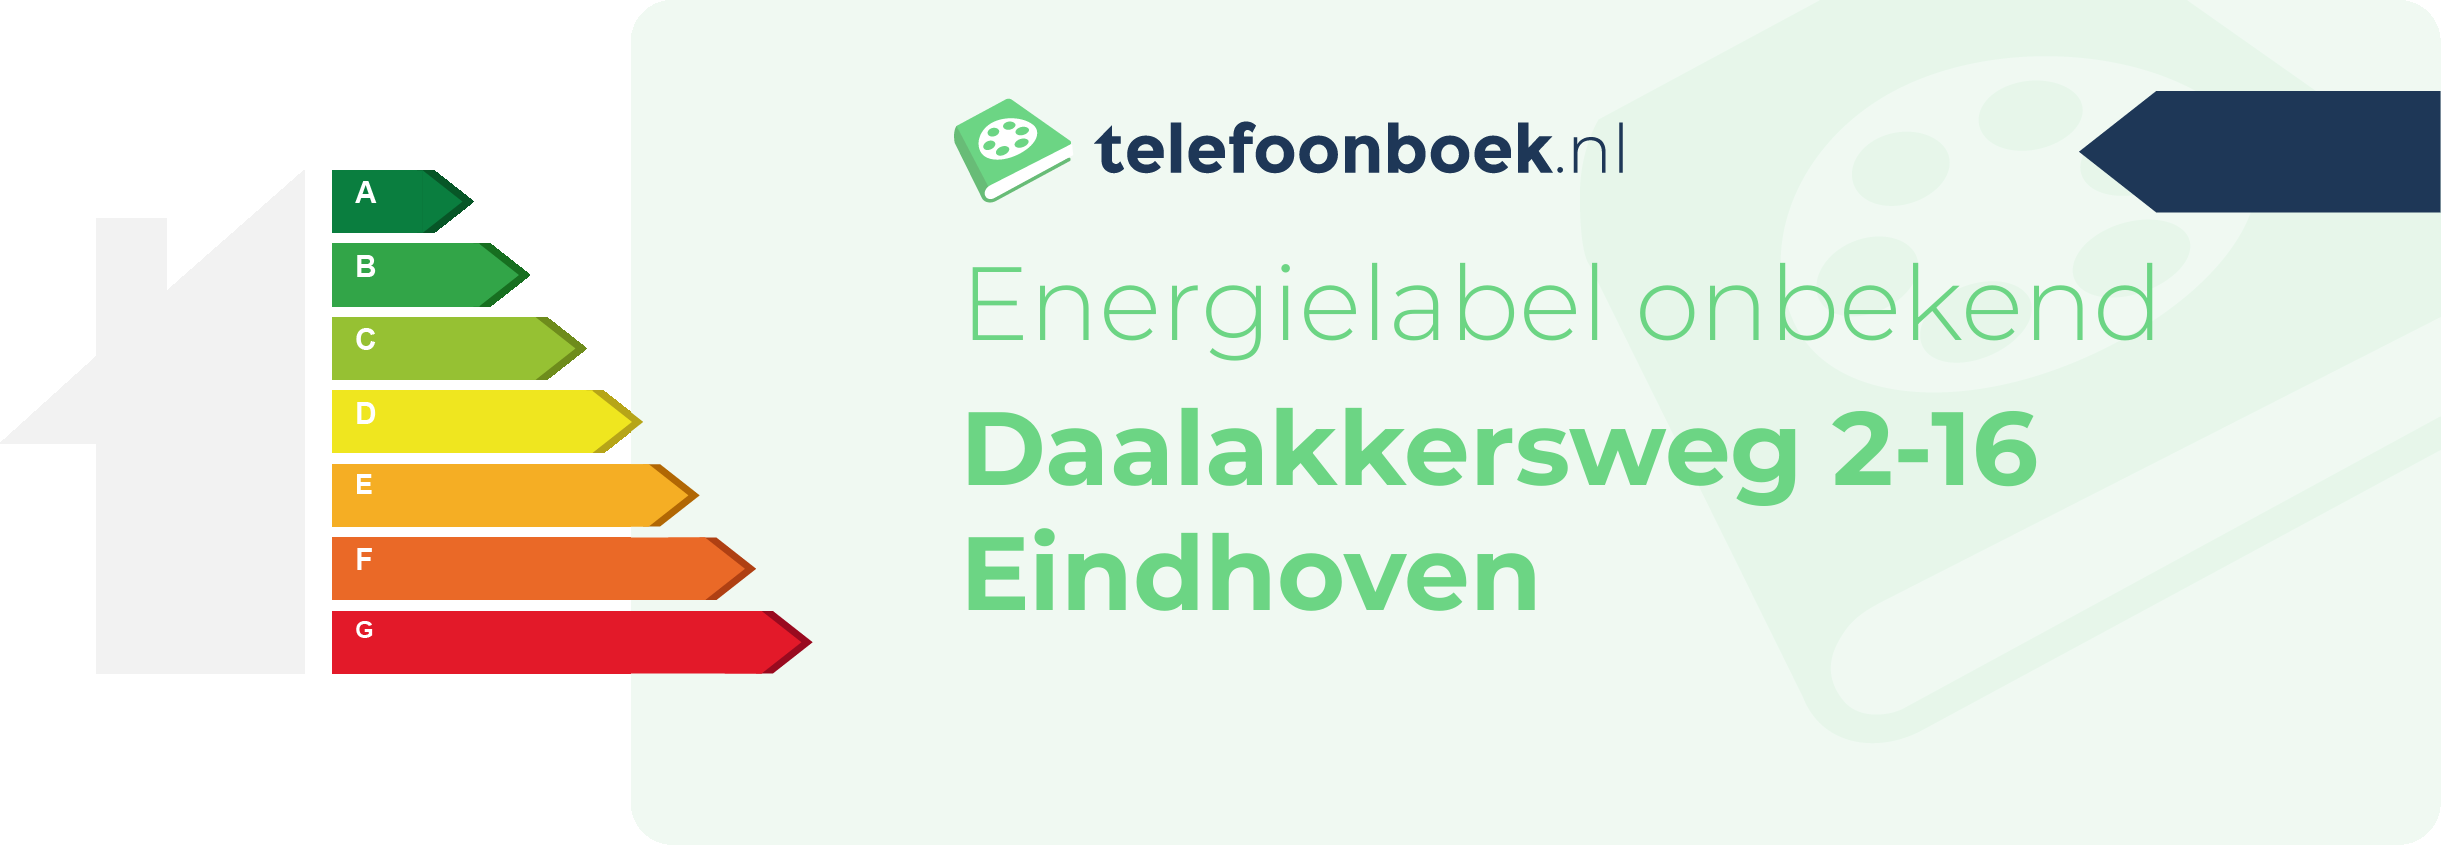 Energielabel Daalakkersweg 2-16 Eindhoven